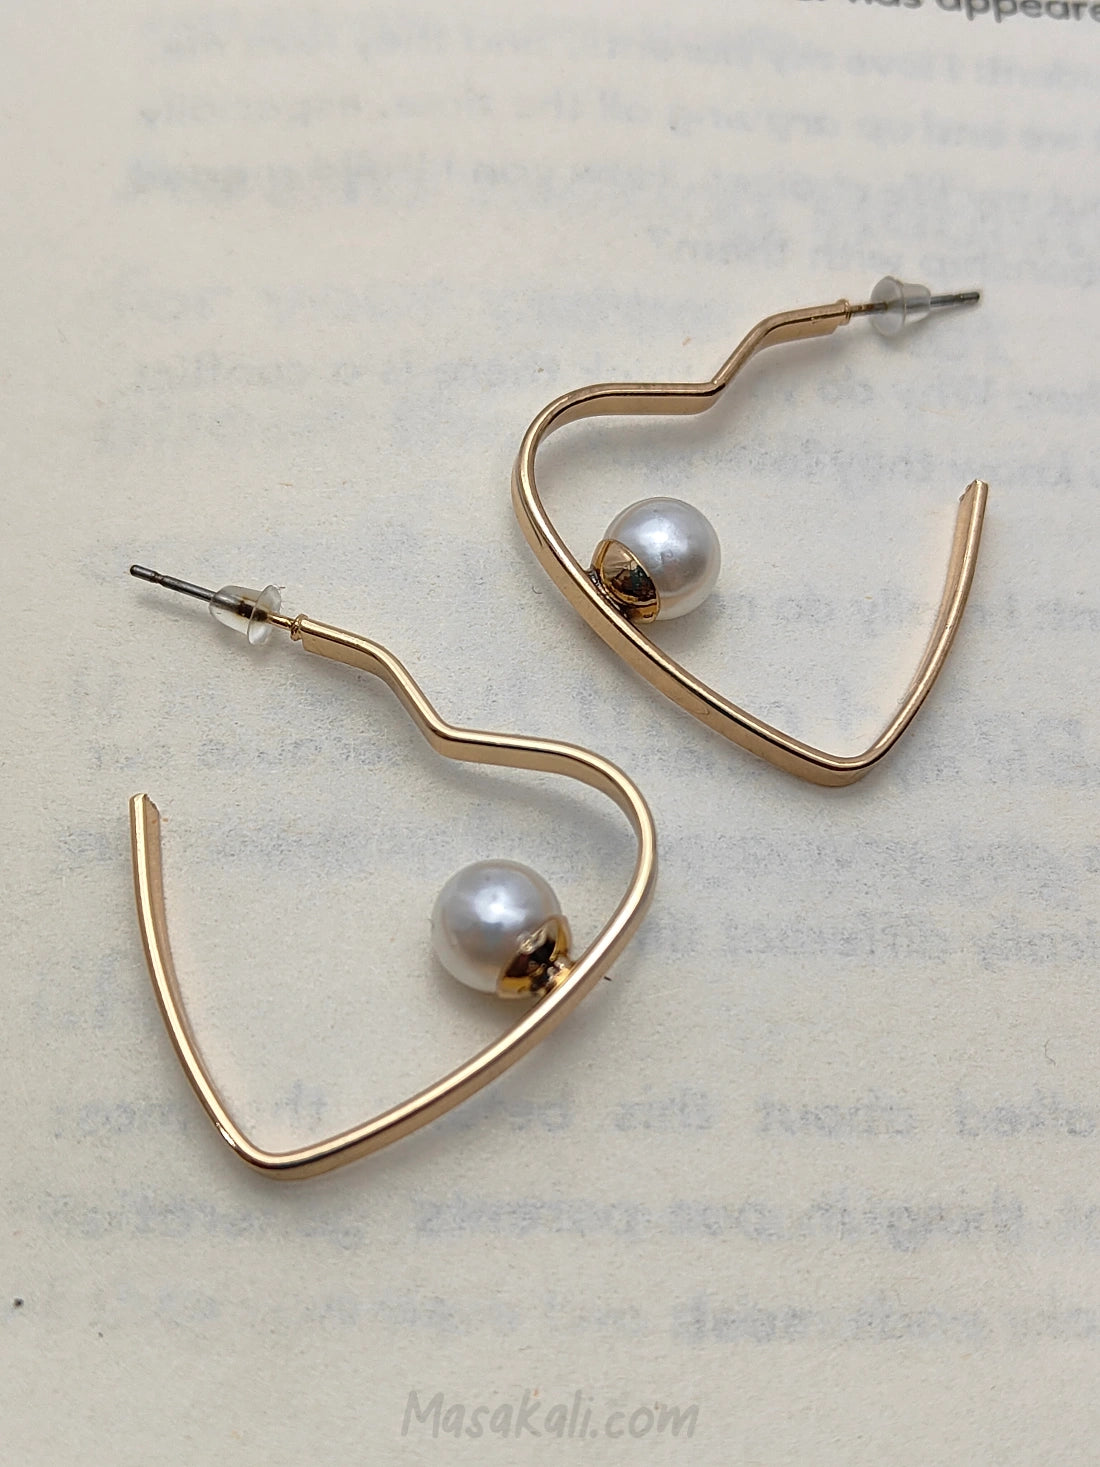 Heart-shaped Hoop Earrings With Pearl, Minimalist Daily Wear Jewellery